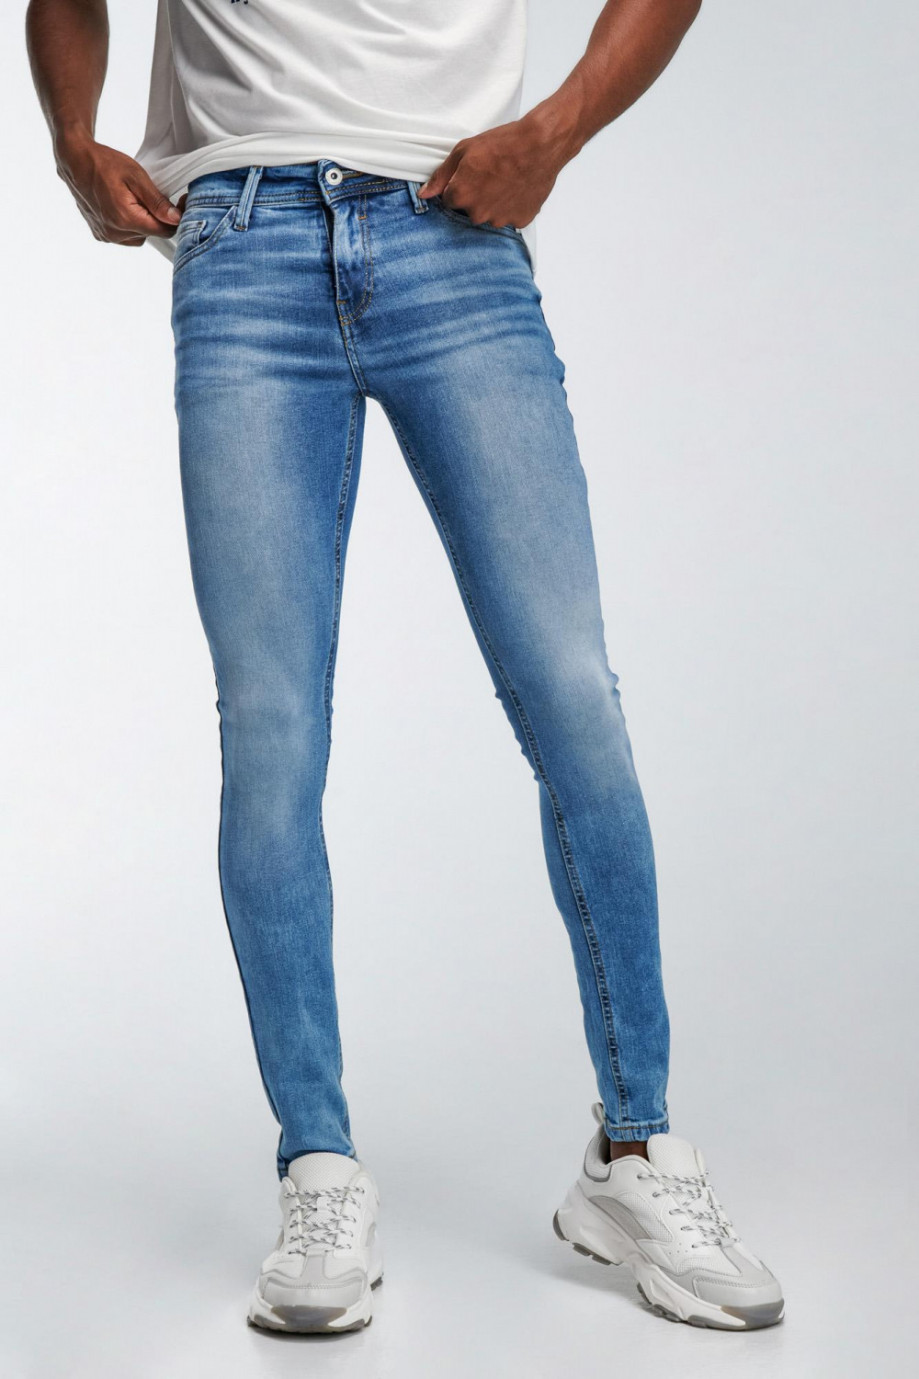 Jean súper skinny azul claro con tiro bajo y efectos desteñidos